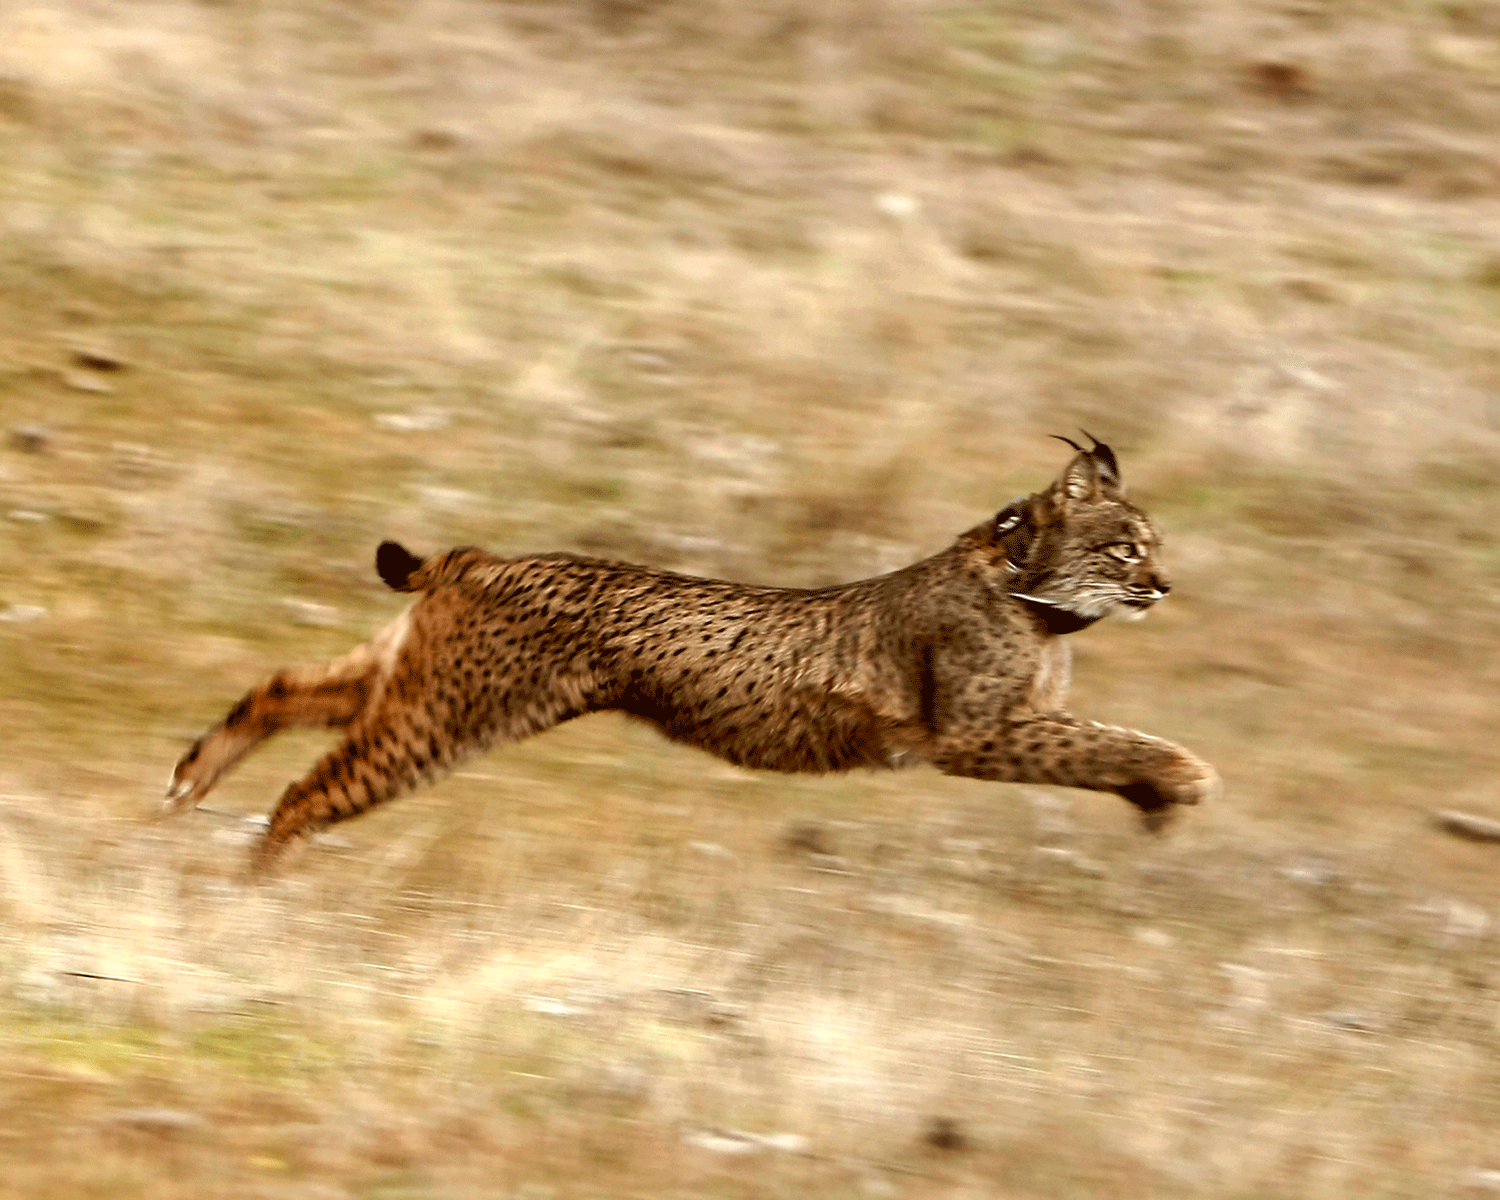 An Iberian lynx runs after being released in Villafranca de Cordoba in Spain